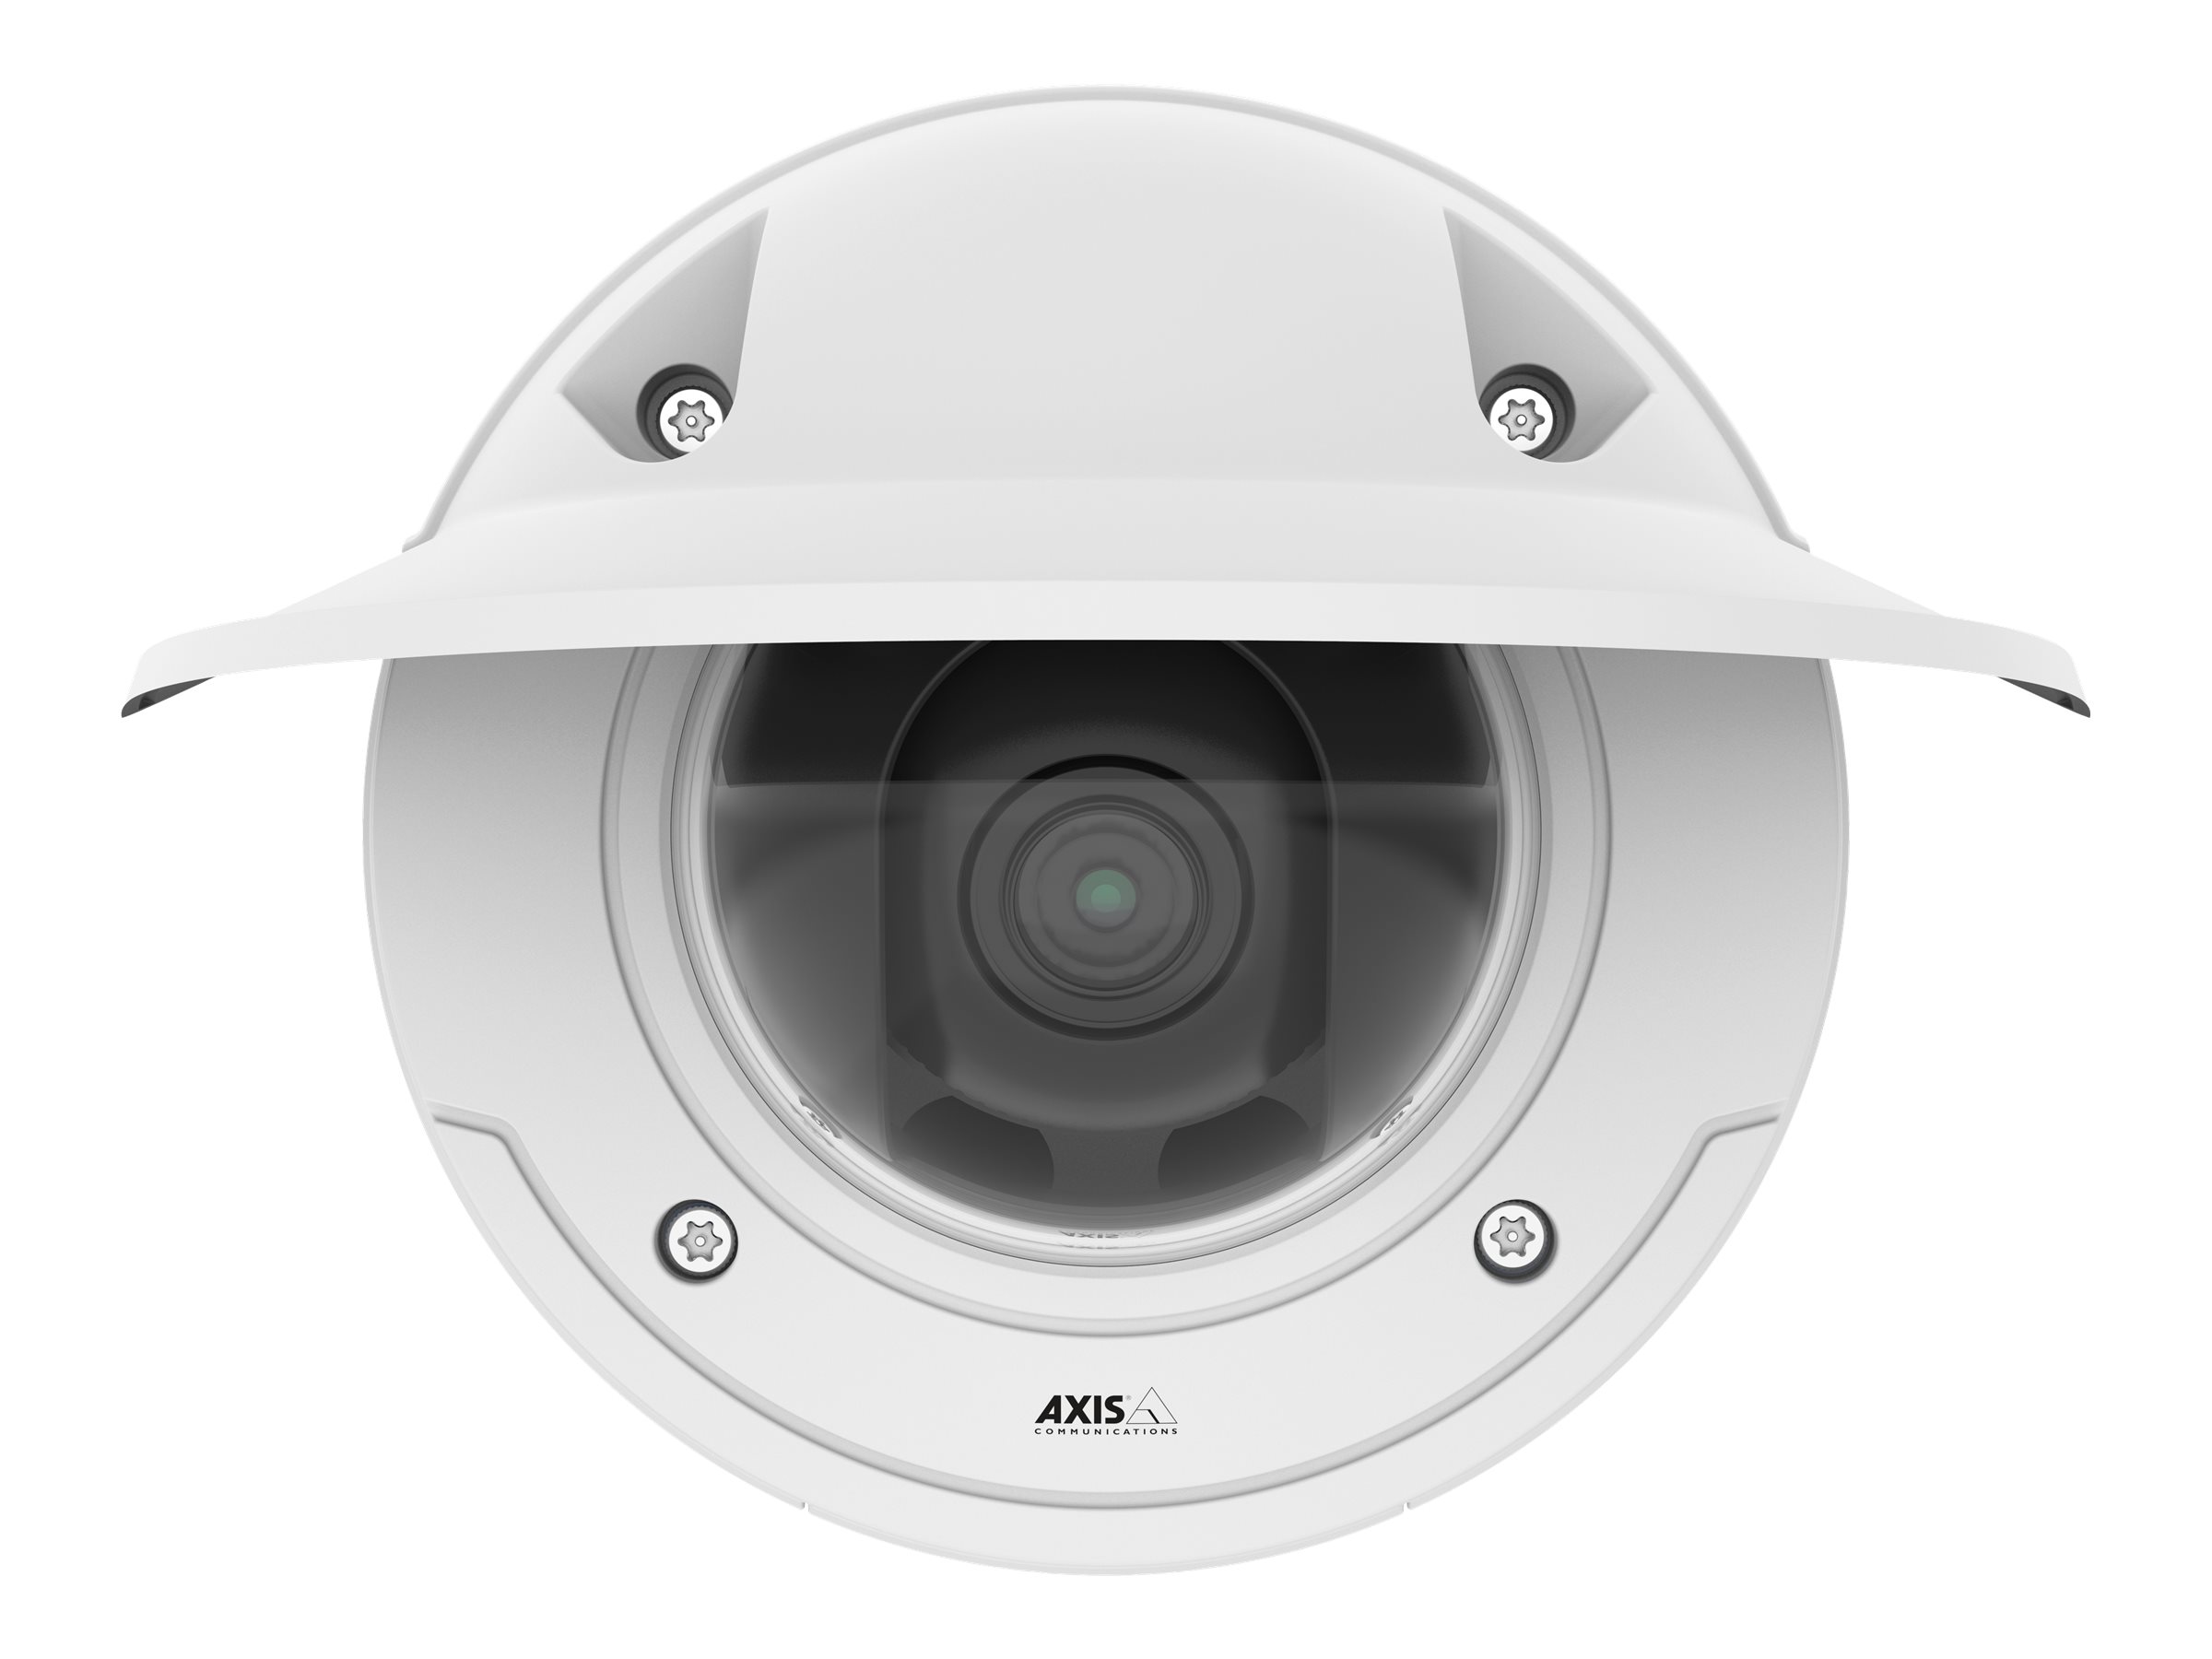 AXIS P3375-VE Network Camera - Caméra de surveillance réseau - dôme - à l'épreuve du vandalisme - couleur (Jour et nuit) - 1920 x 1080 - 1080p - à focale variable - audio - LAN 10/100 - MPEG-4, MJPEG, H.264, AVC - PoE - 01061-001 - Caméras réseau